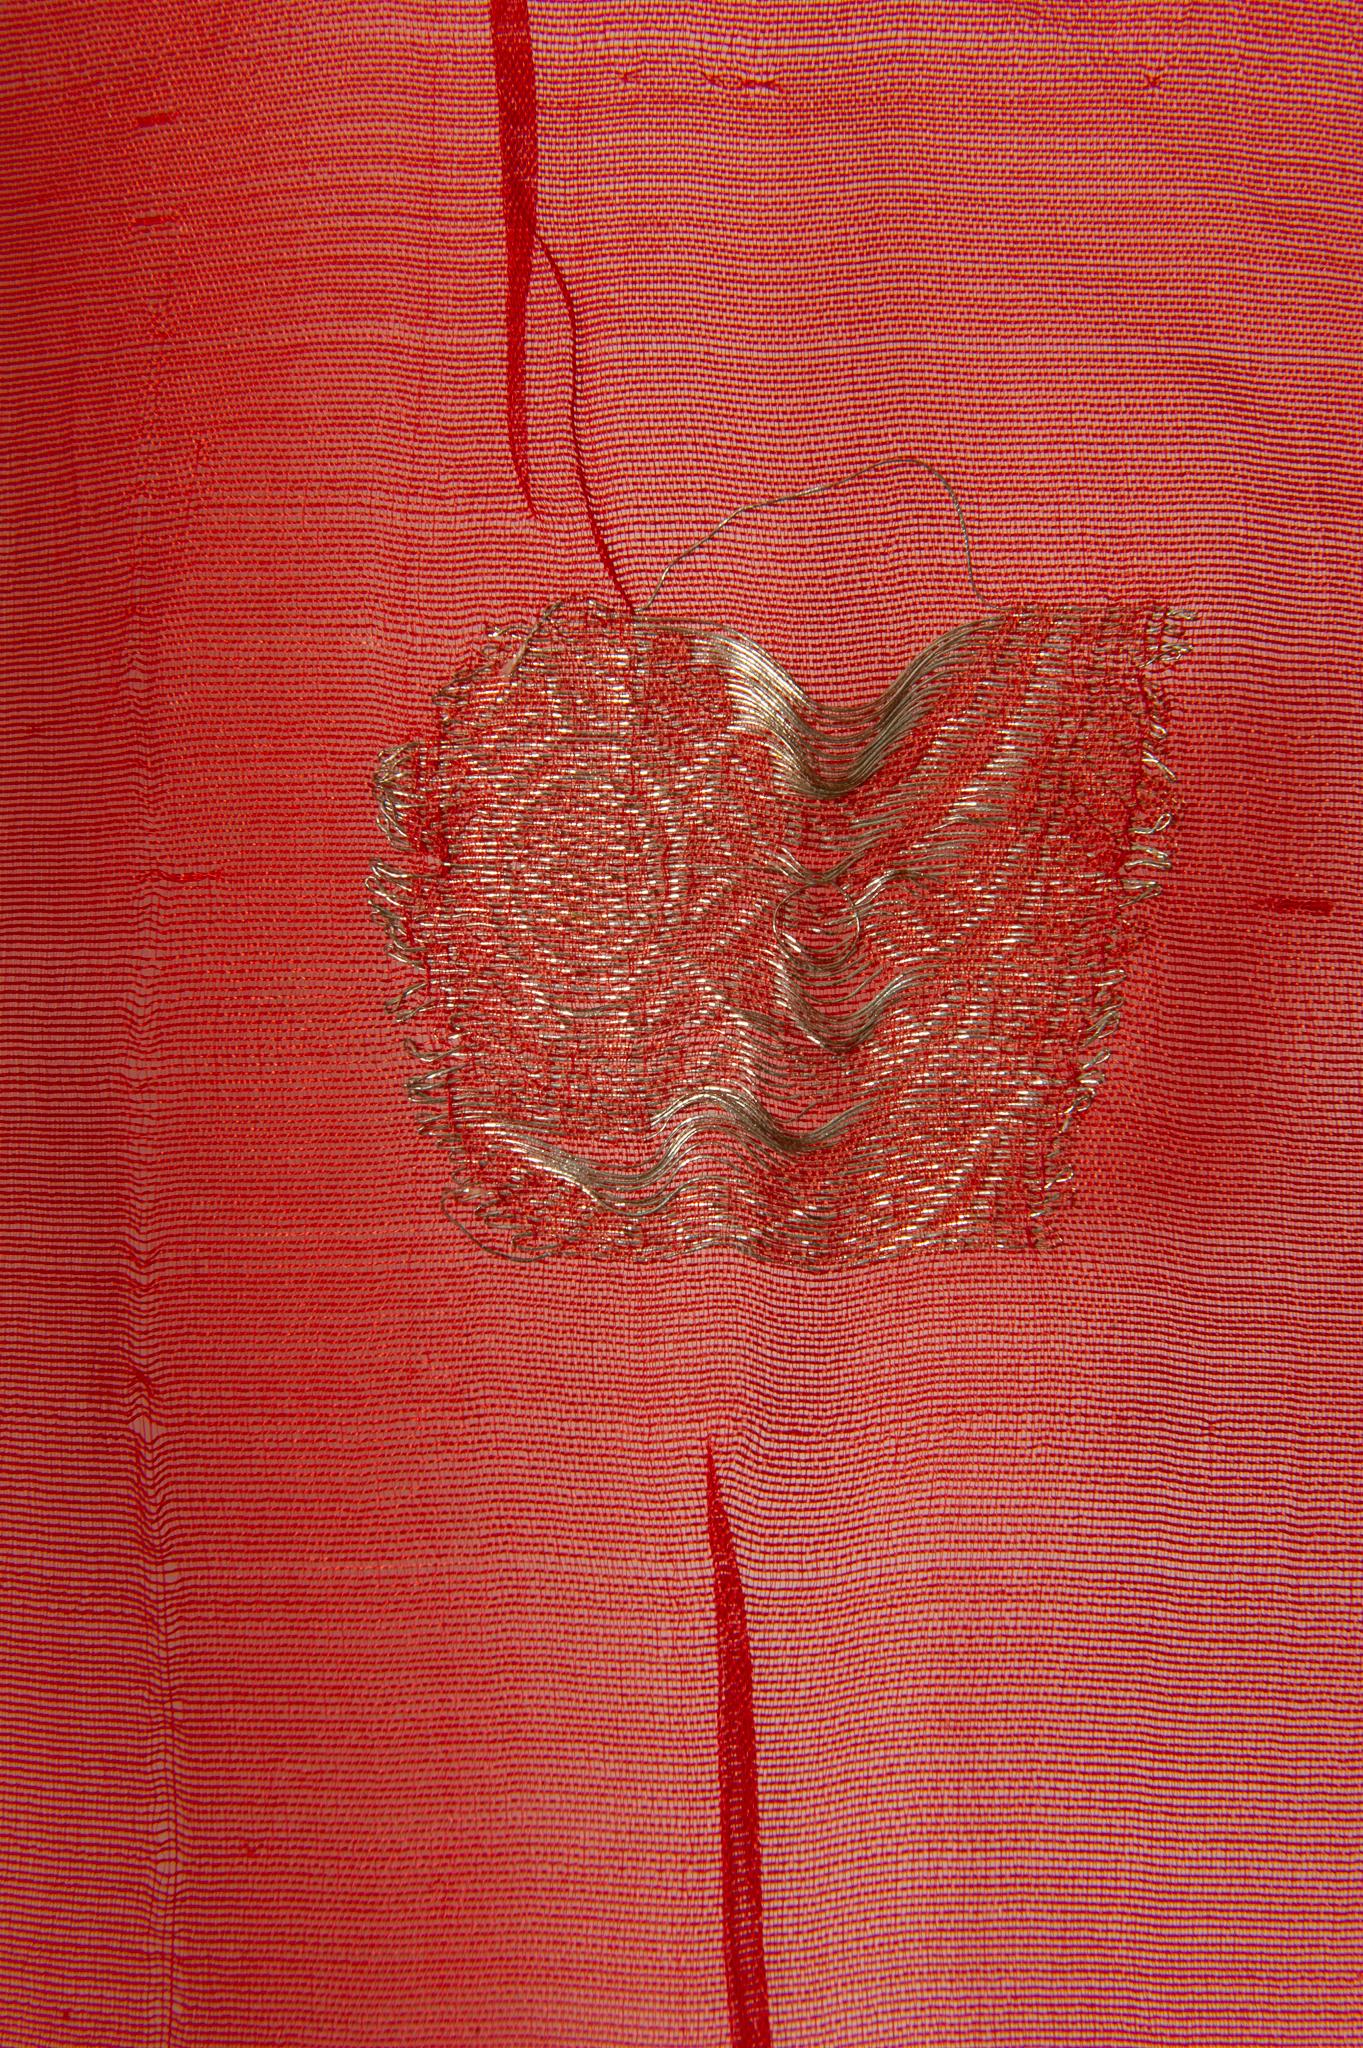  Sari indien couleur corail Nouvelle idée de rideaux inhabituels aussi en vente 5